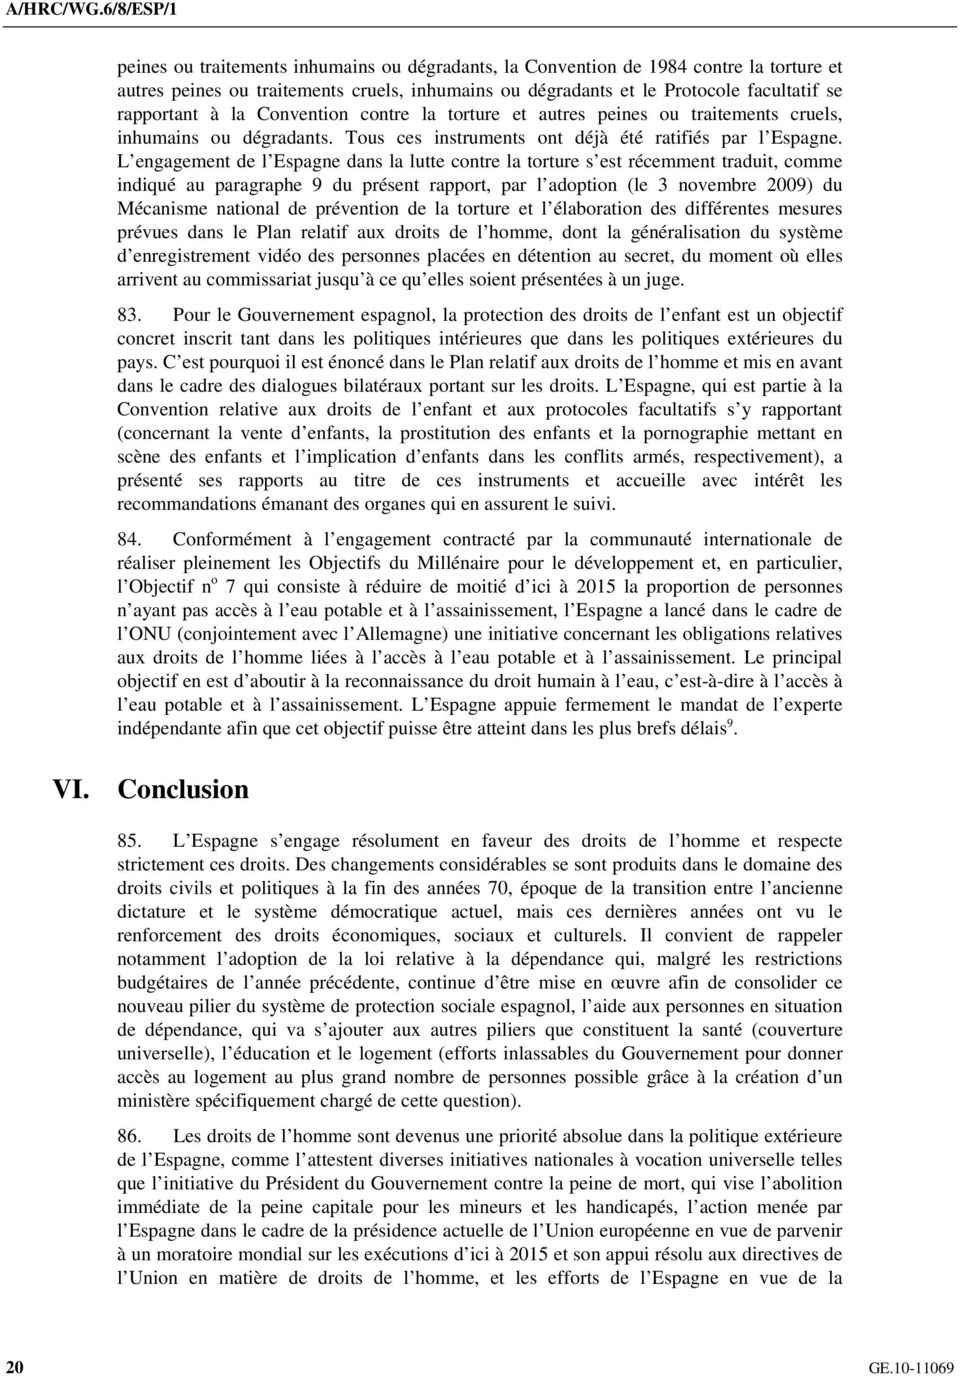 L engagement de l Espagne dans la lutte contre la torture s est récemment traduit, comme indiqué au paragraphe 9 du présent rapport, par l adoption (le 3 novembre 2009) du Mécanisme national de